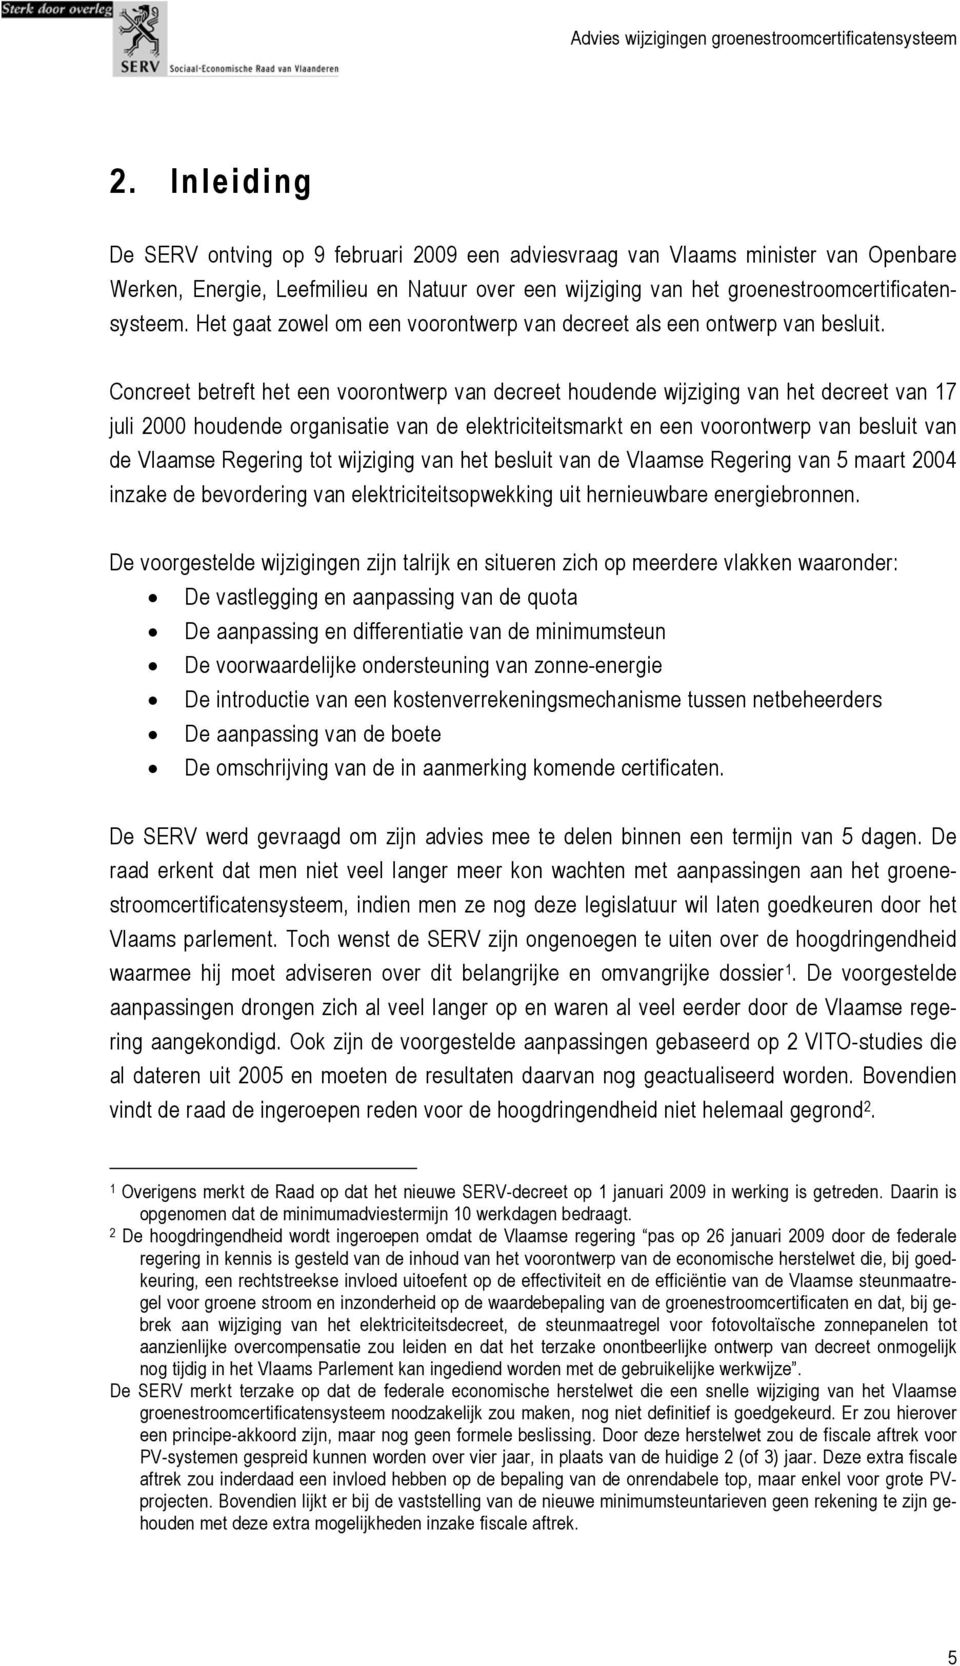 Concreet betreft het een voorontwerp van decreet houdende wijziging van het decreet van 17 juli 2000 houdende organisatie van de elektriciteitsmarkt en een voorontwerp van besluit van de Vlaamse